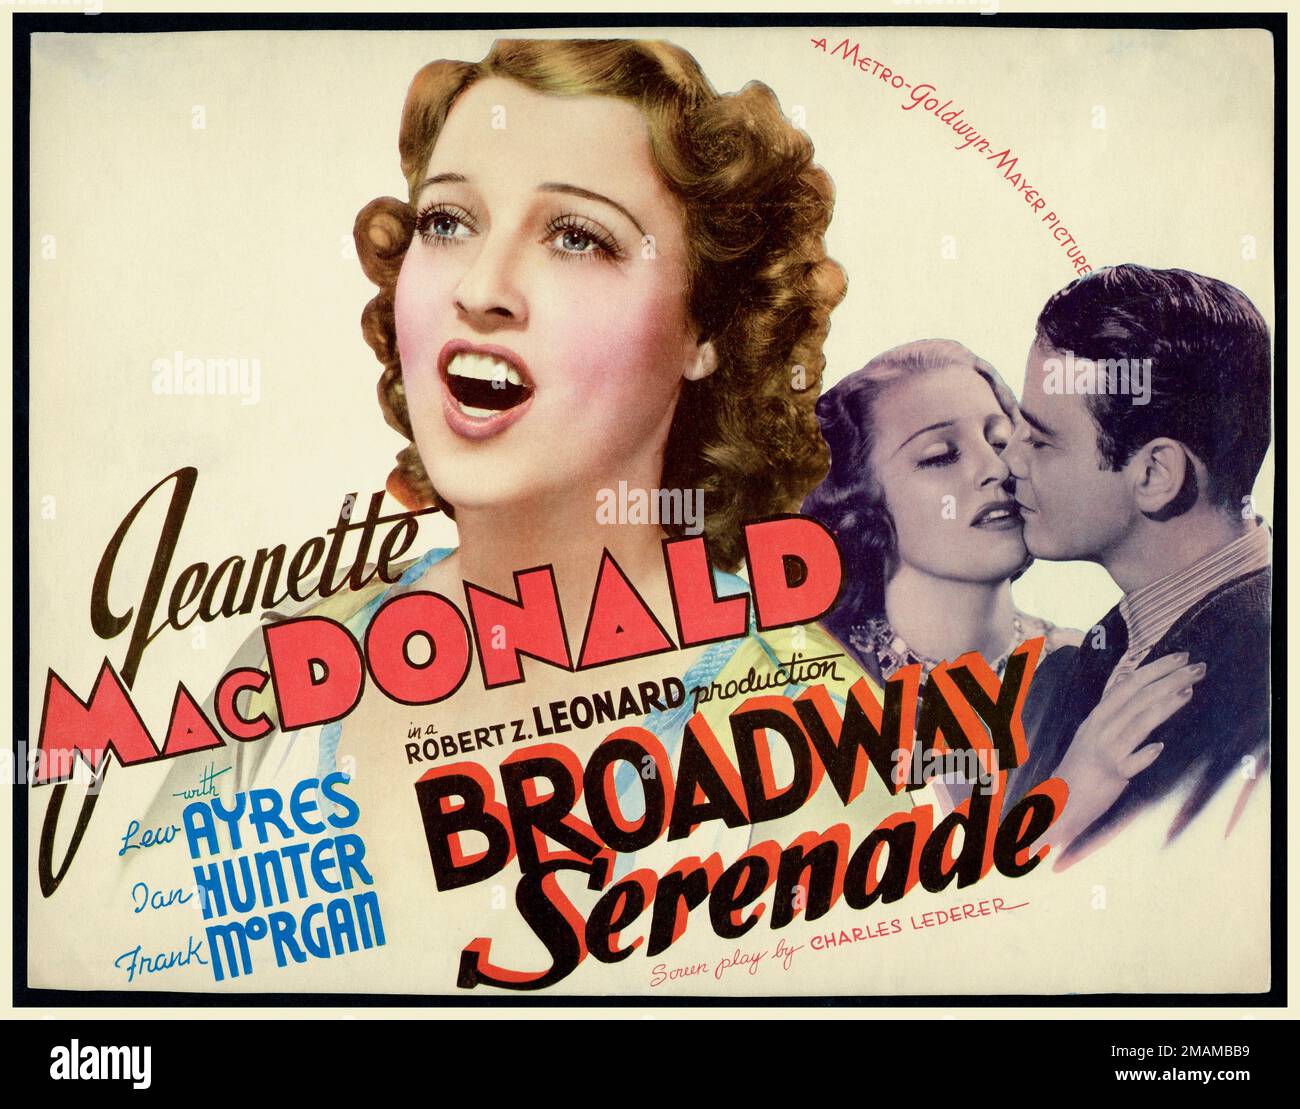 Affiche du film vintage pour la comédie musicale américaine 'Broadway Serenade'(1939). Avec Jeanette MacDonald, avec Lew Ayres, Dan Hunter et Frank Morgon. MGM image Hollywood USA Banque D'Images